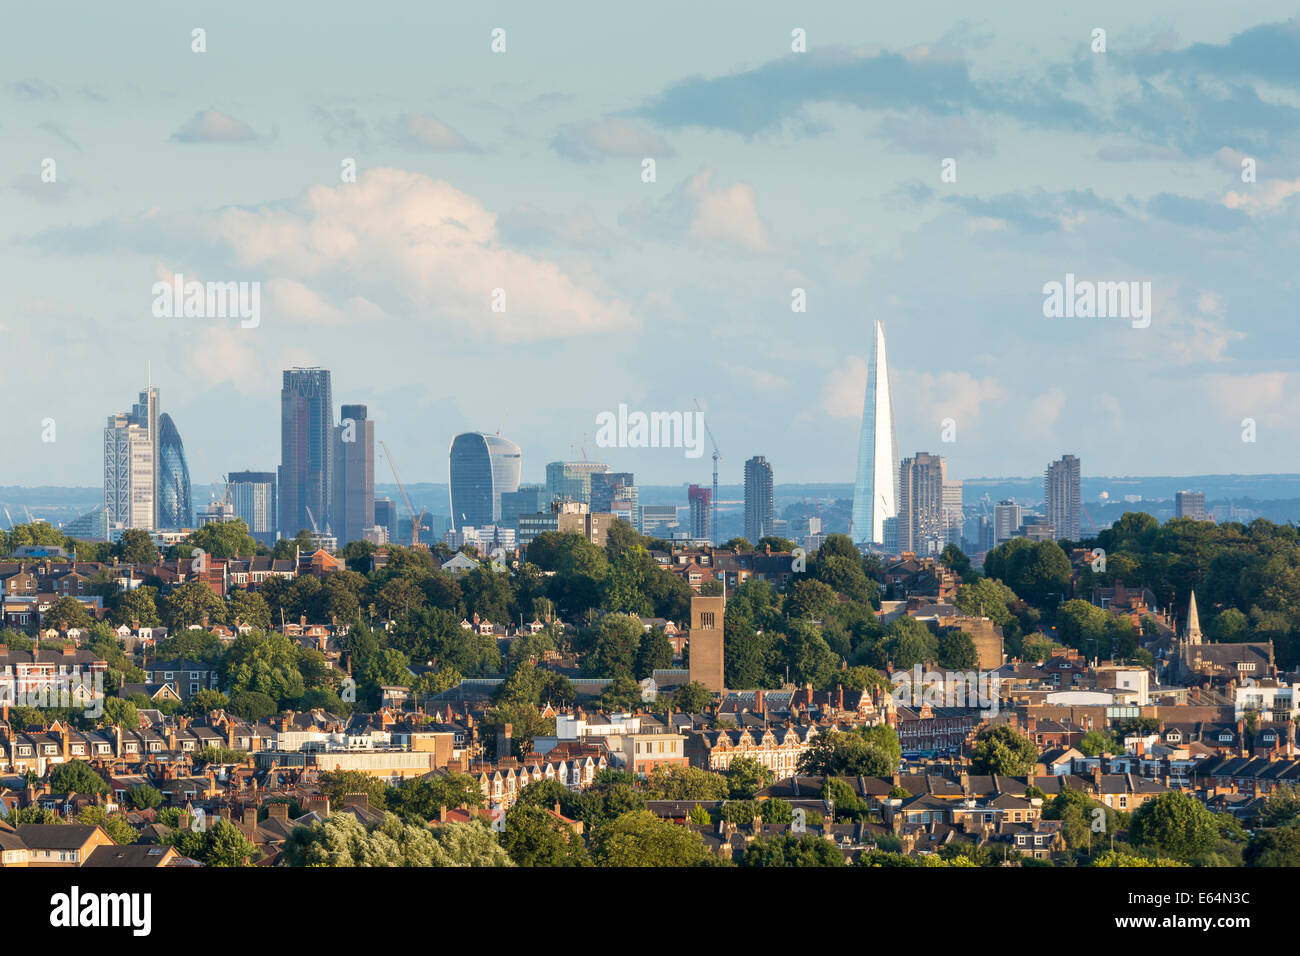 London City Skyline at soirée, de Alexandra Palace. Angleterre, Royaume-Uni Banque D'Images